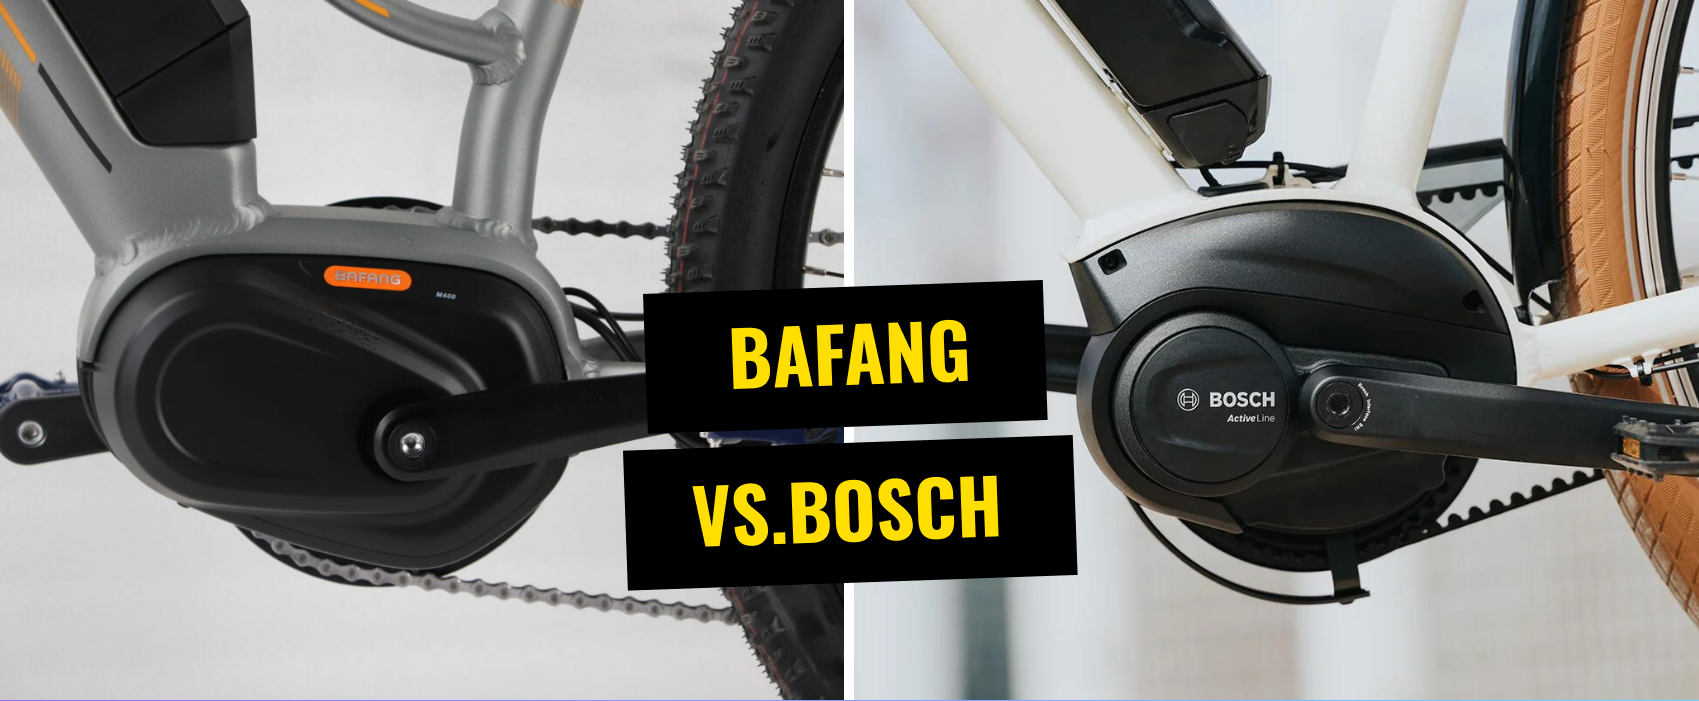 Bafang vs. Bosch